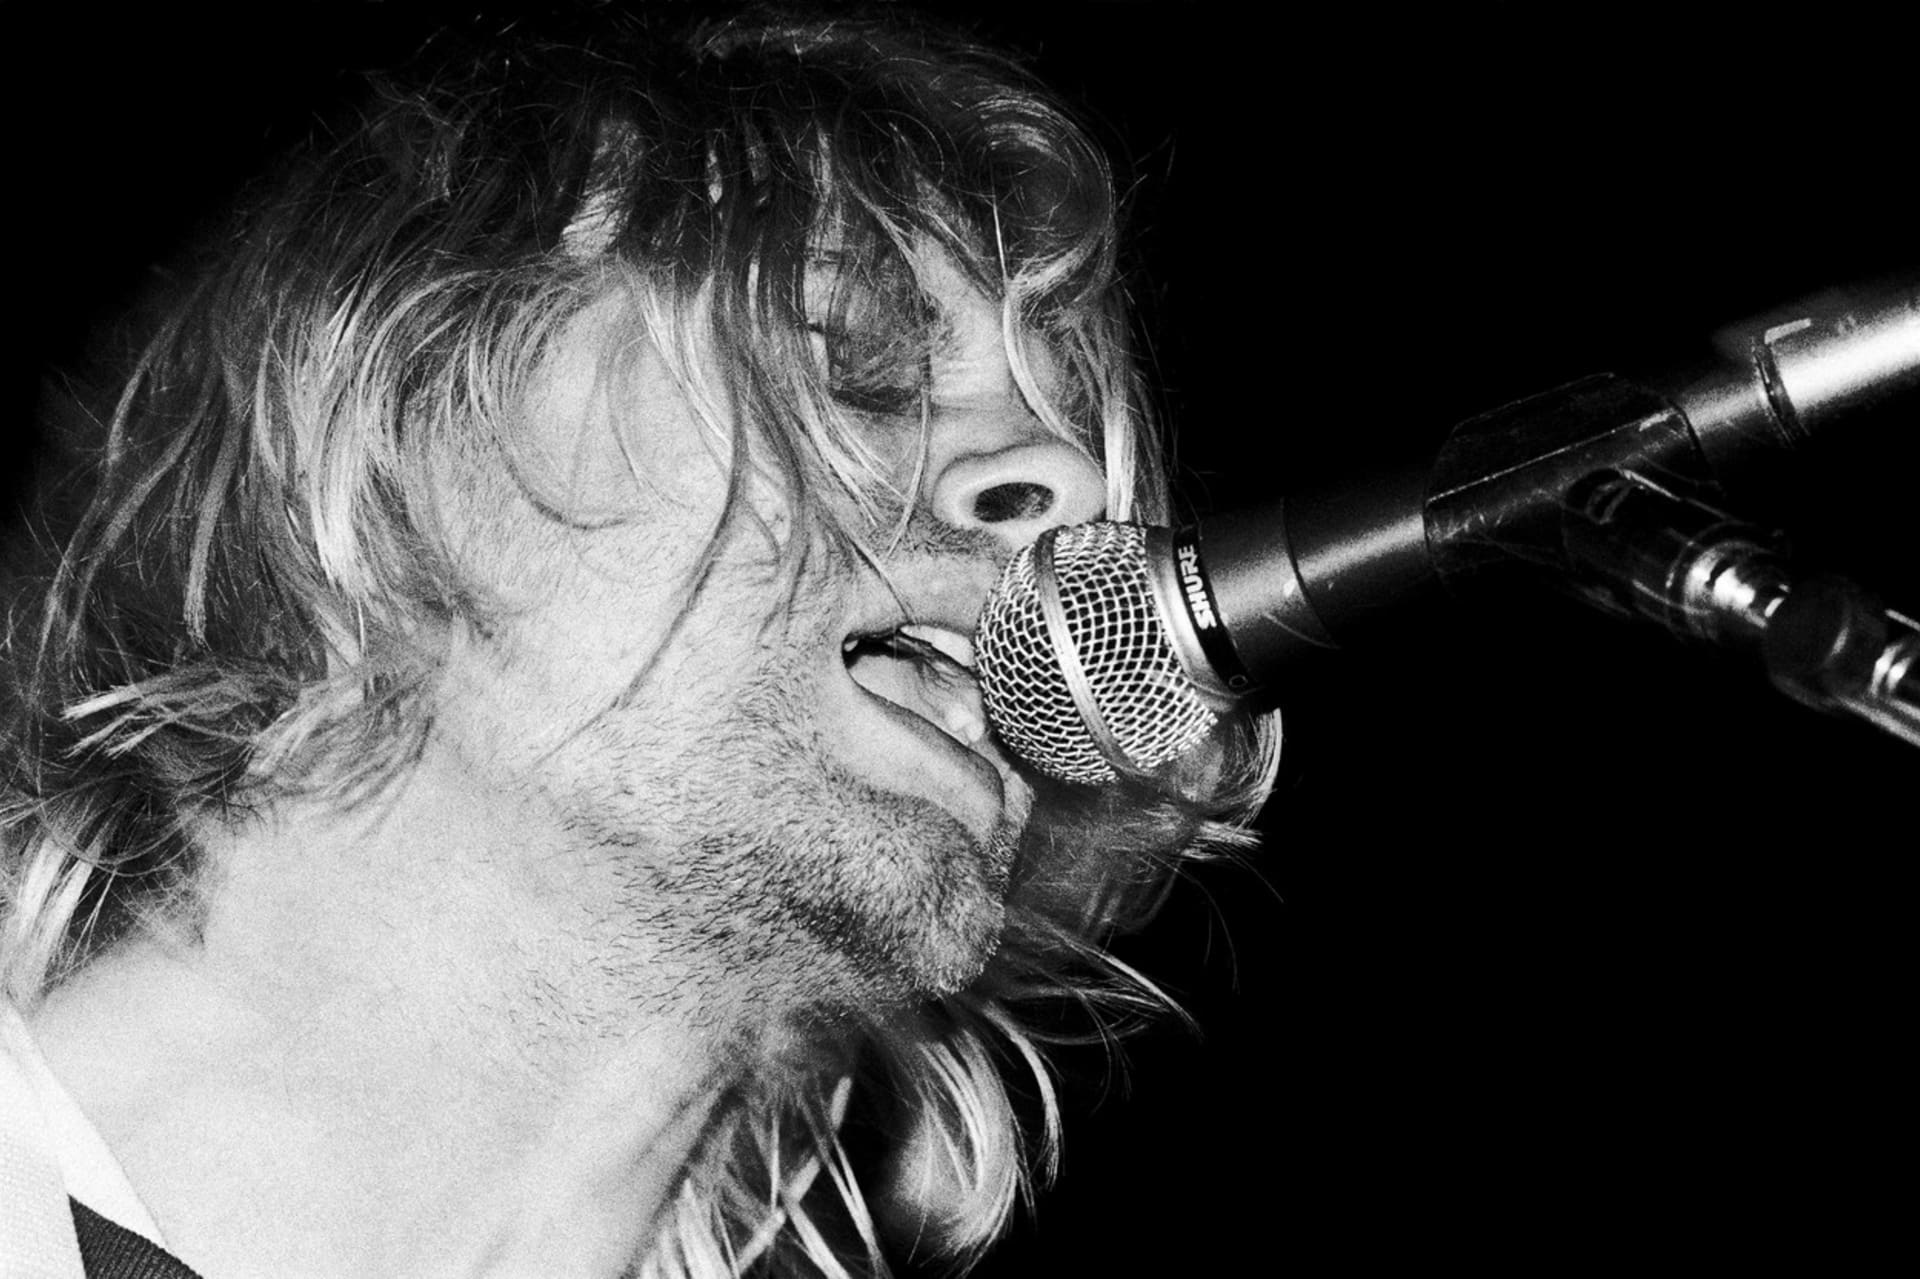 Cobain zemřel v pouhých 27 letech. Zastřelil se ve svém domě.